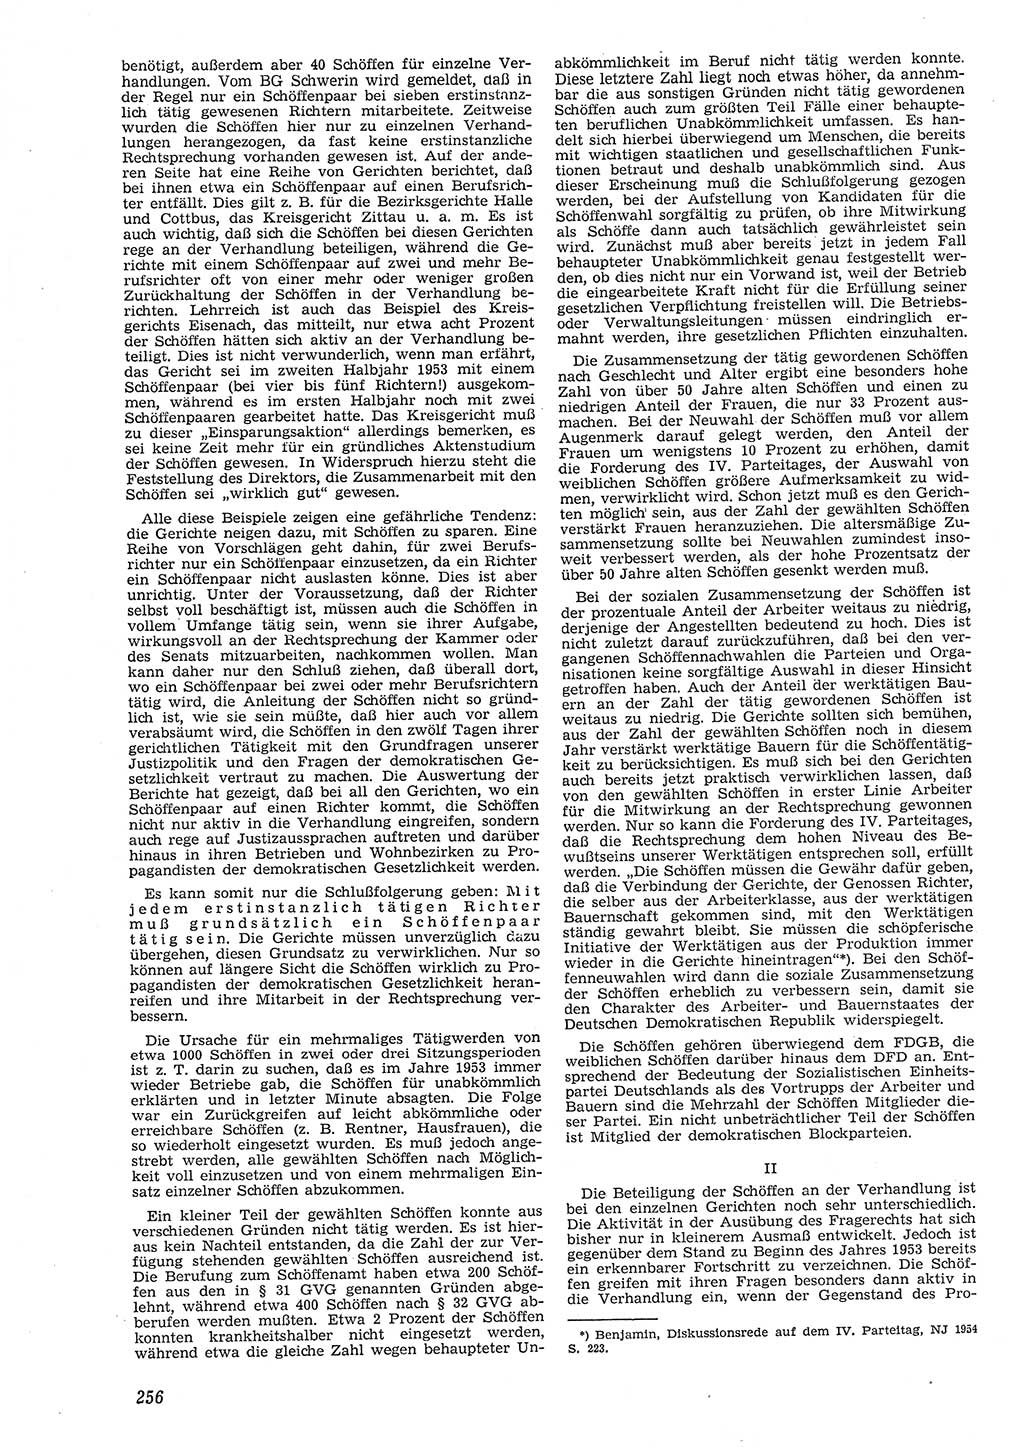 Neue Justiz (NJ), Zeitschrift für Recht und Rechtswissenschaft [Deutsche Demokratische Republik (DDR)], 8. Jahrgang 1954, Seite 256 (NJ DDR 1954, S. 256)